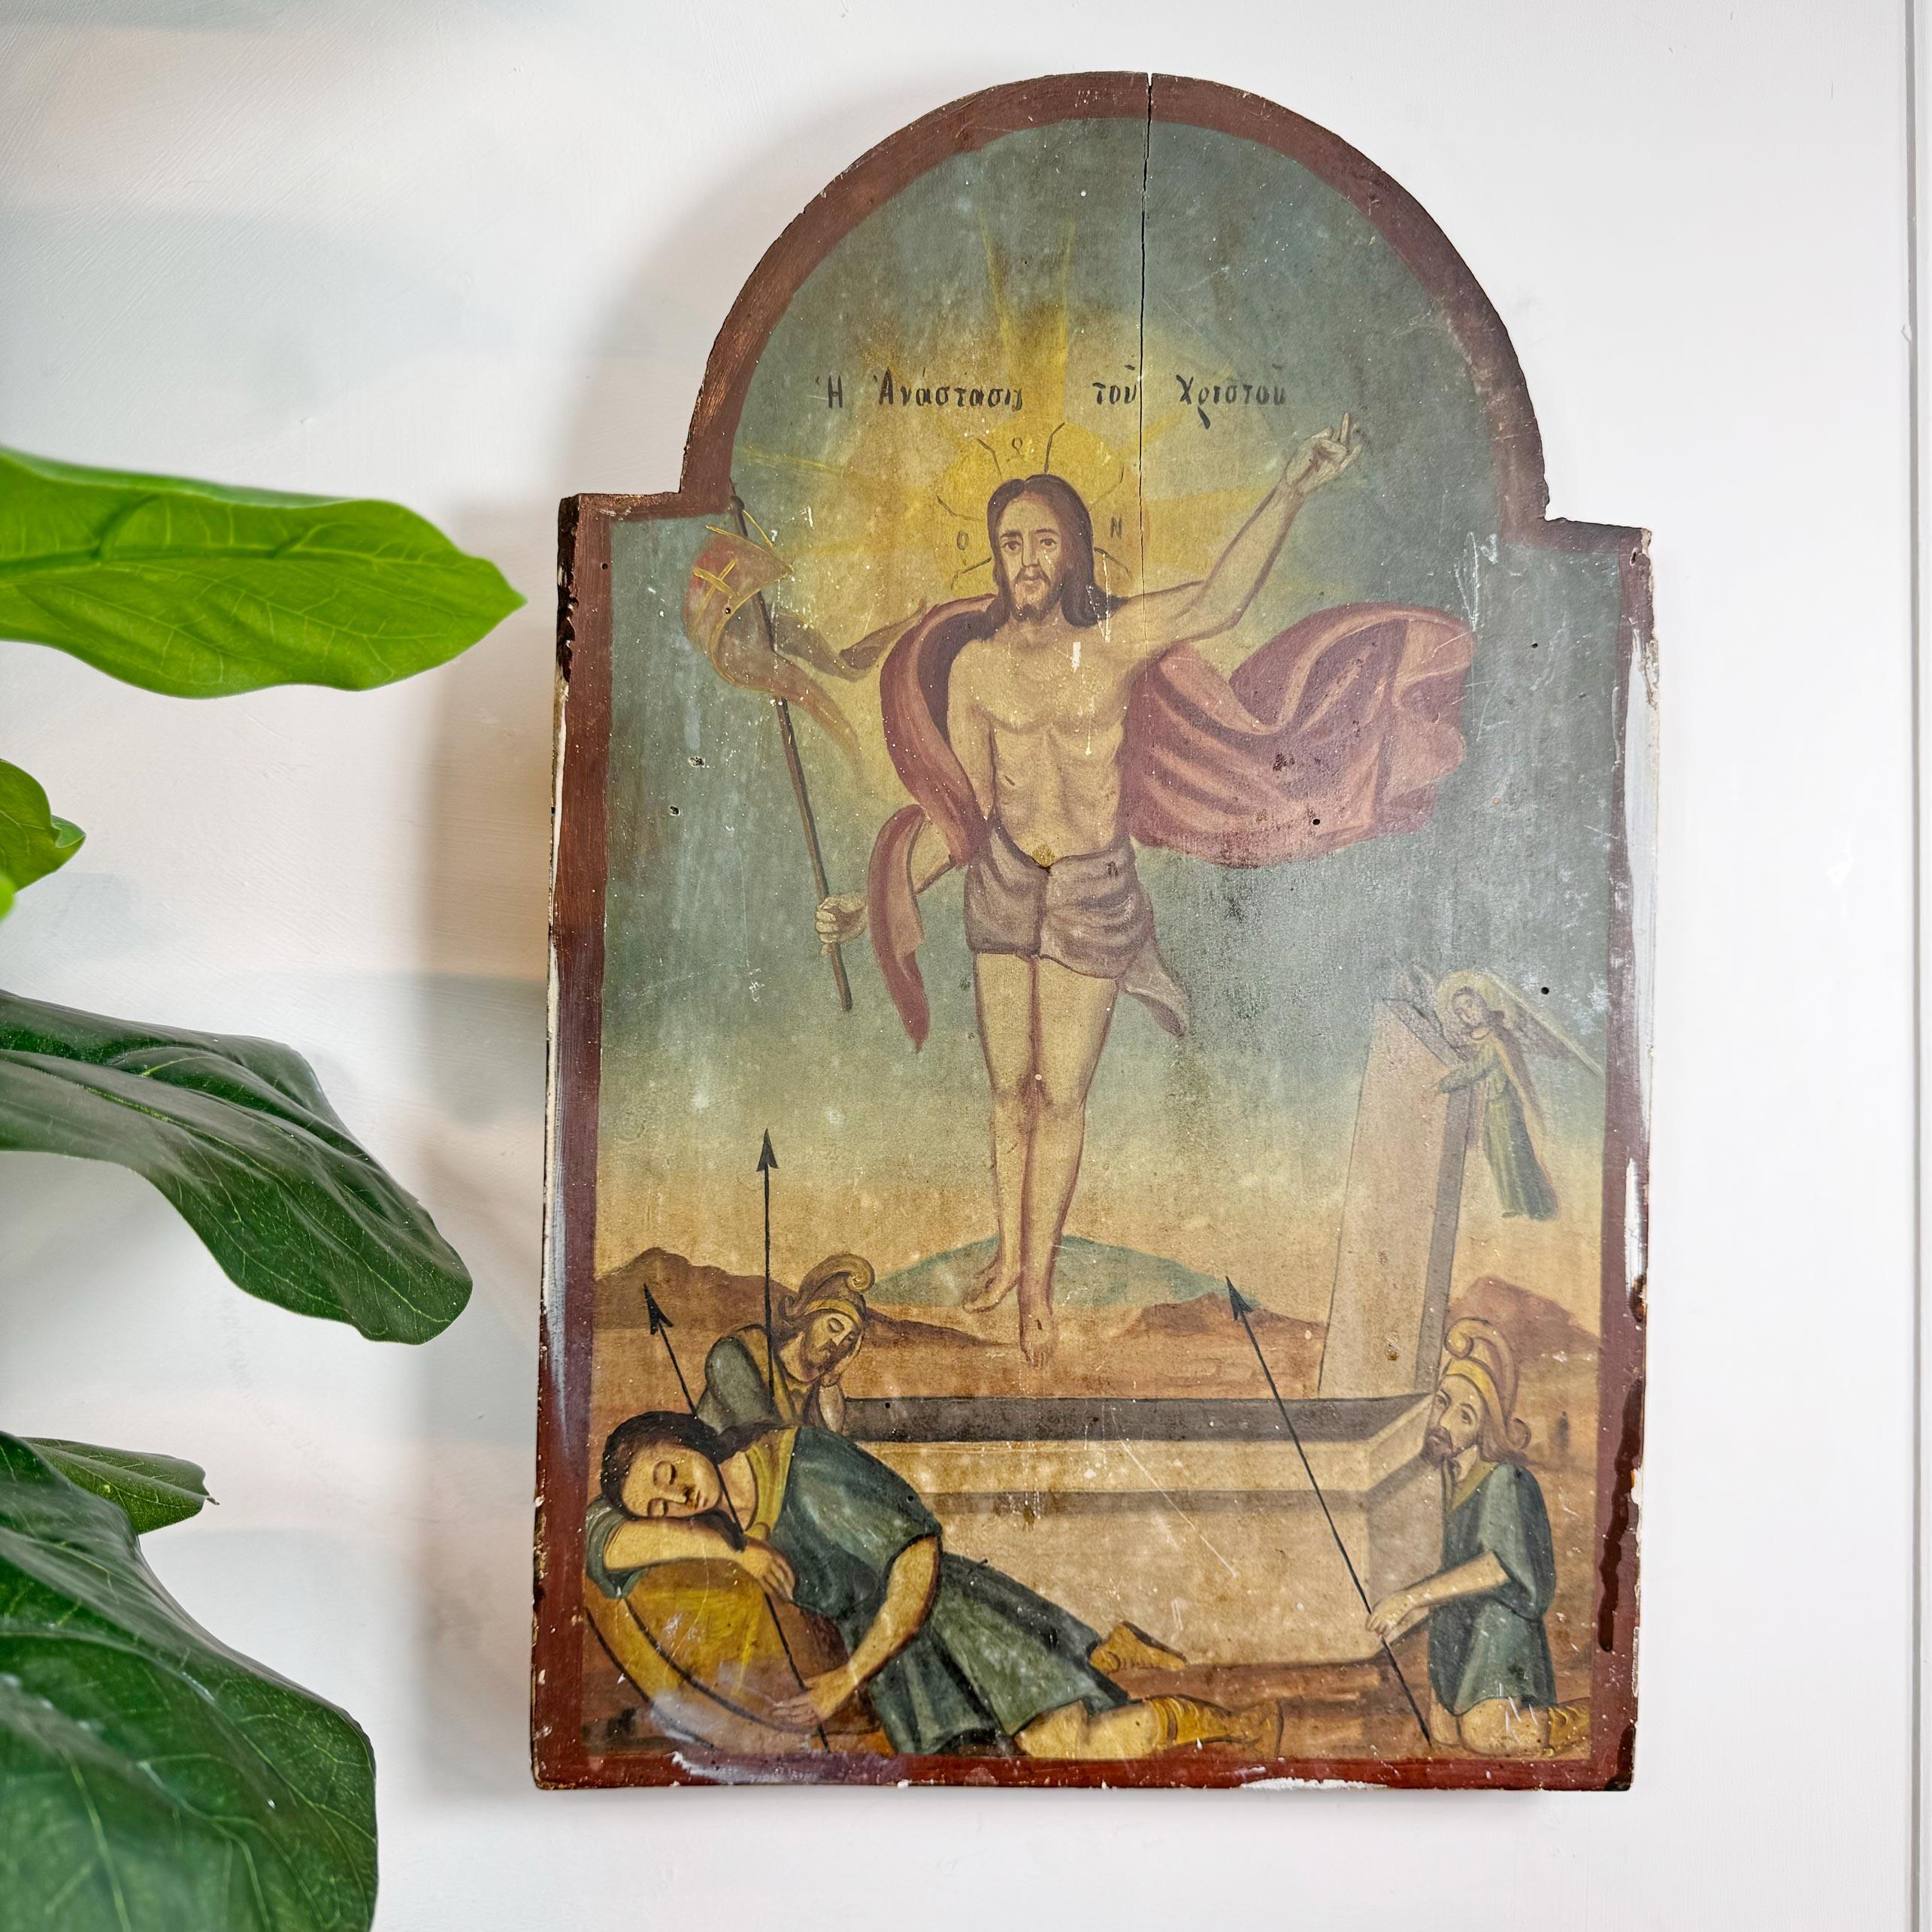 Glorieuse Icône sur panneau de chêne datant du 18ème siècle et représentant la Résurrection du Christ, cette Icône était originaire du Mont Athos a  montagne de la péninsule d'Athos, au nord-est de la Grèce. C'est un centre important du monachisme